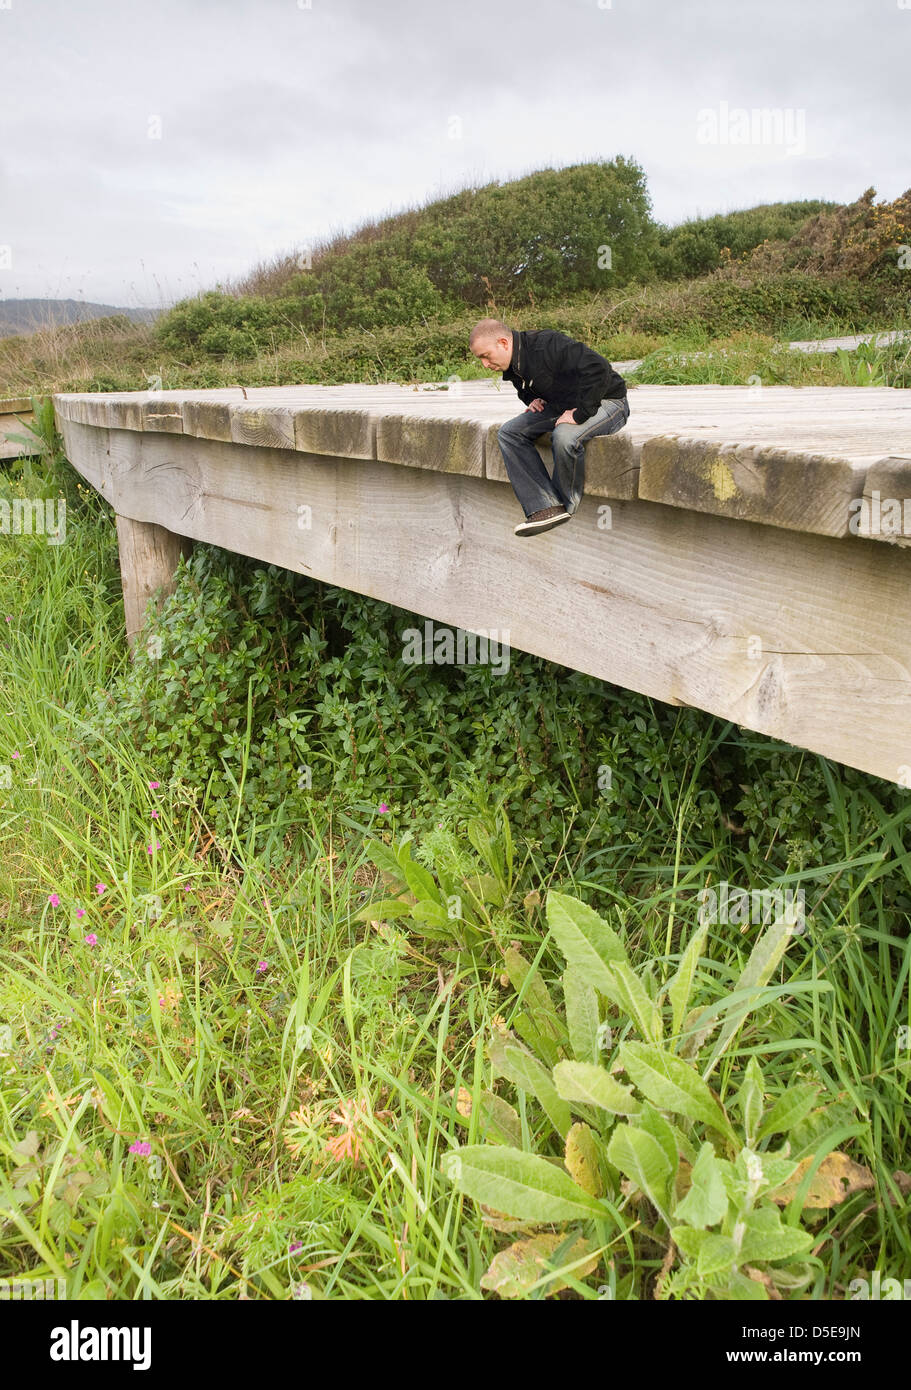 Fotomontaje de un joven sentado en una pasarela de madera en la naturaleza y mirando hacia abajo. El hombre es pequeño en comparación con los alrededores env Foto de stock